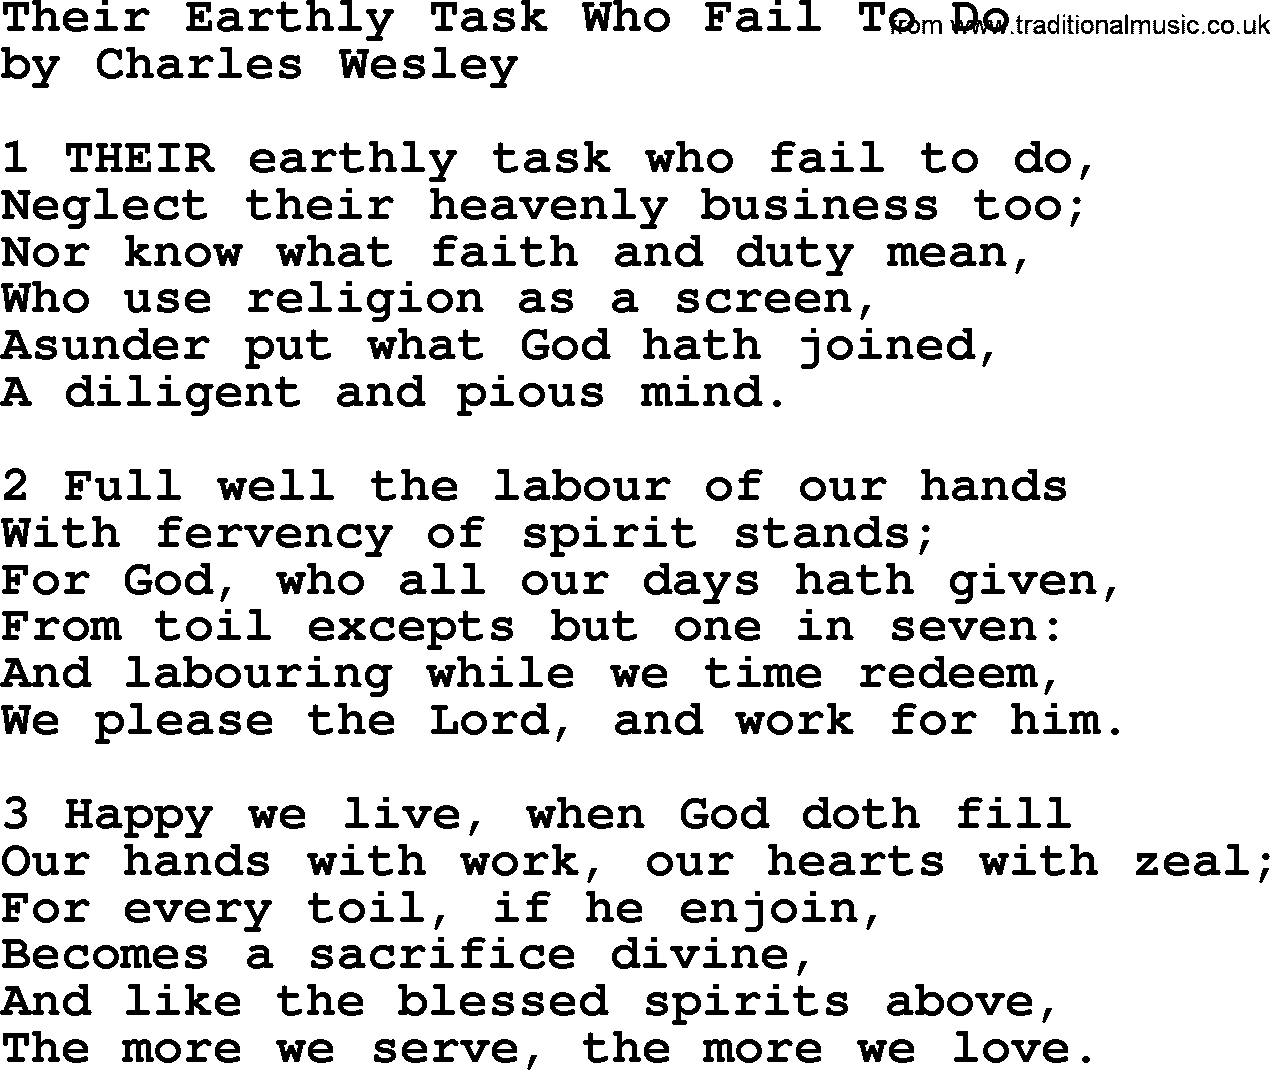 Charles Wesley hymn: Their Earthly Task Who Fail To Do, lyrics